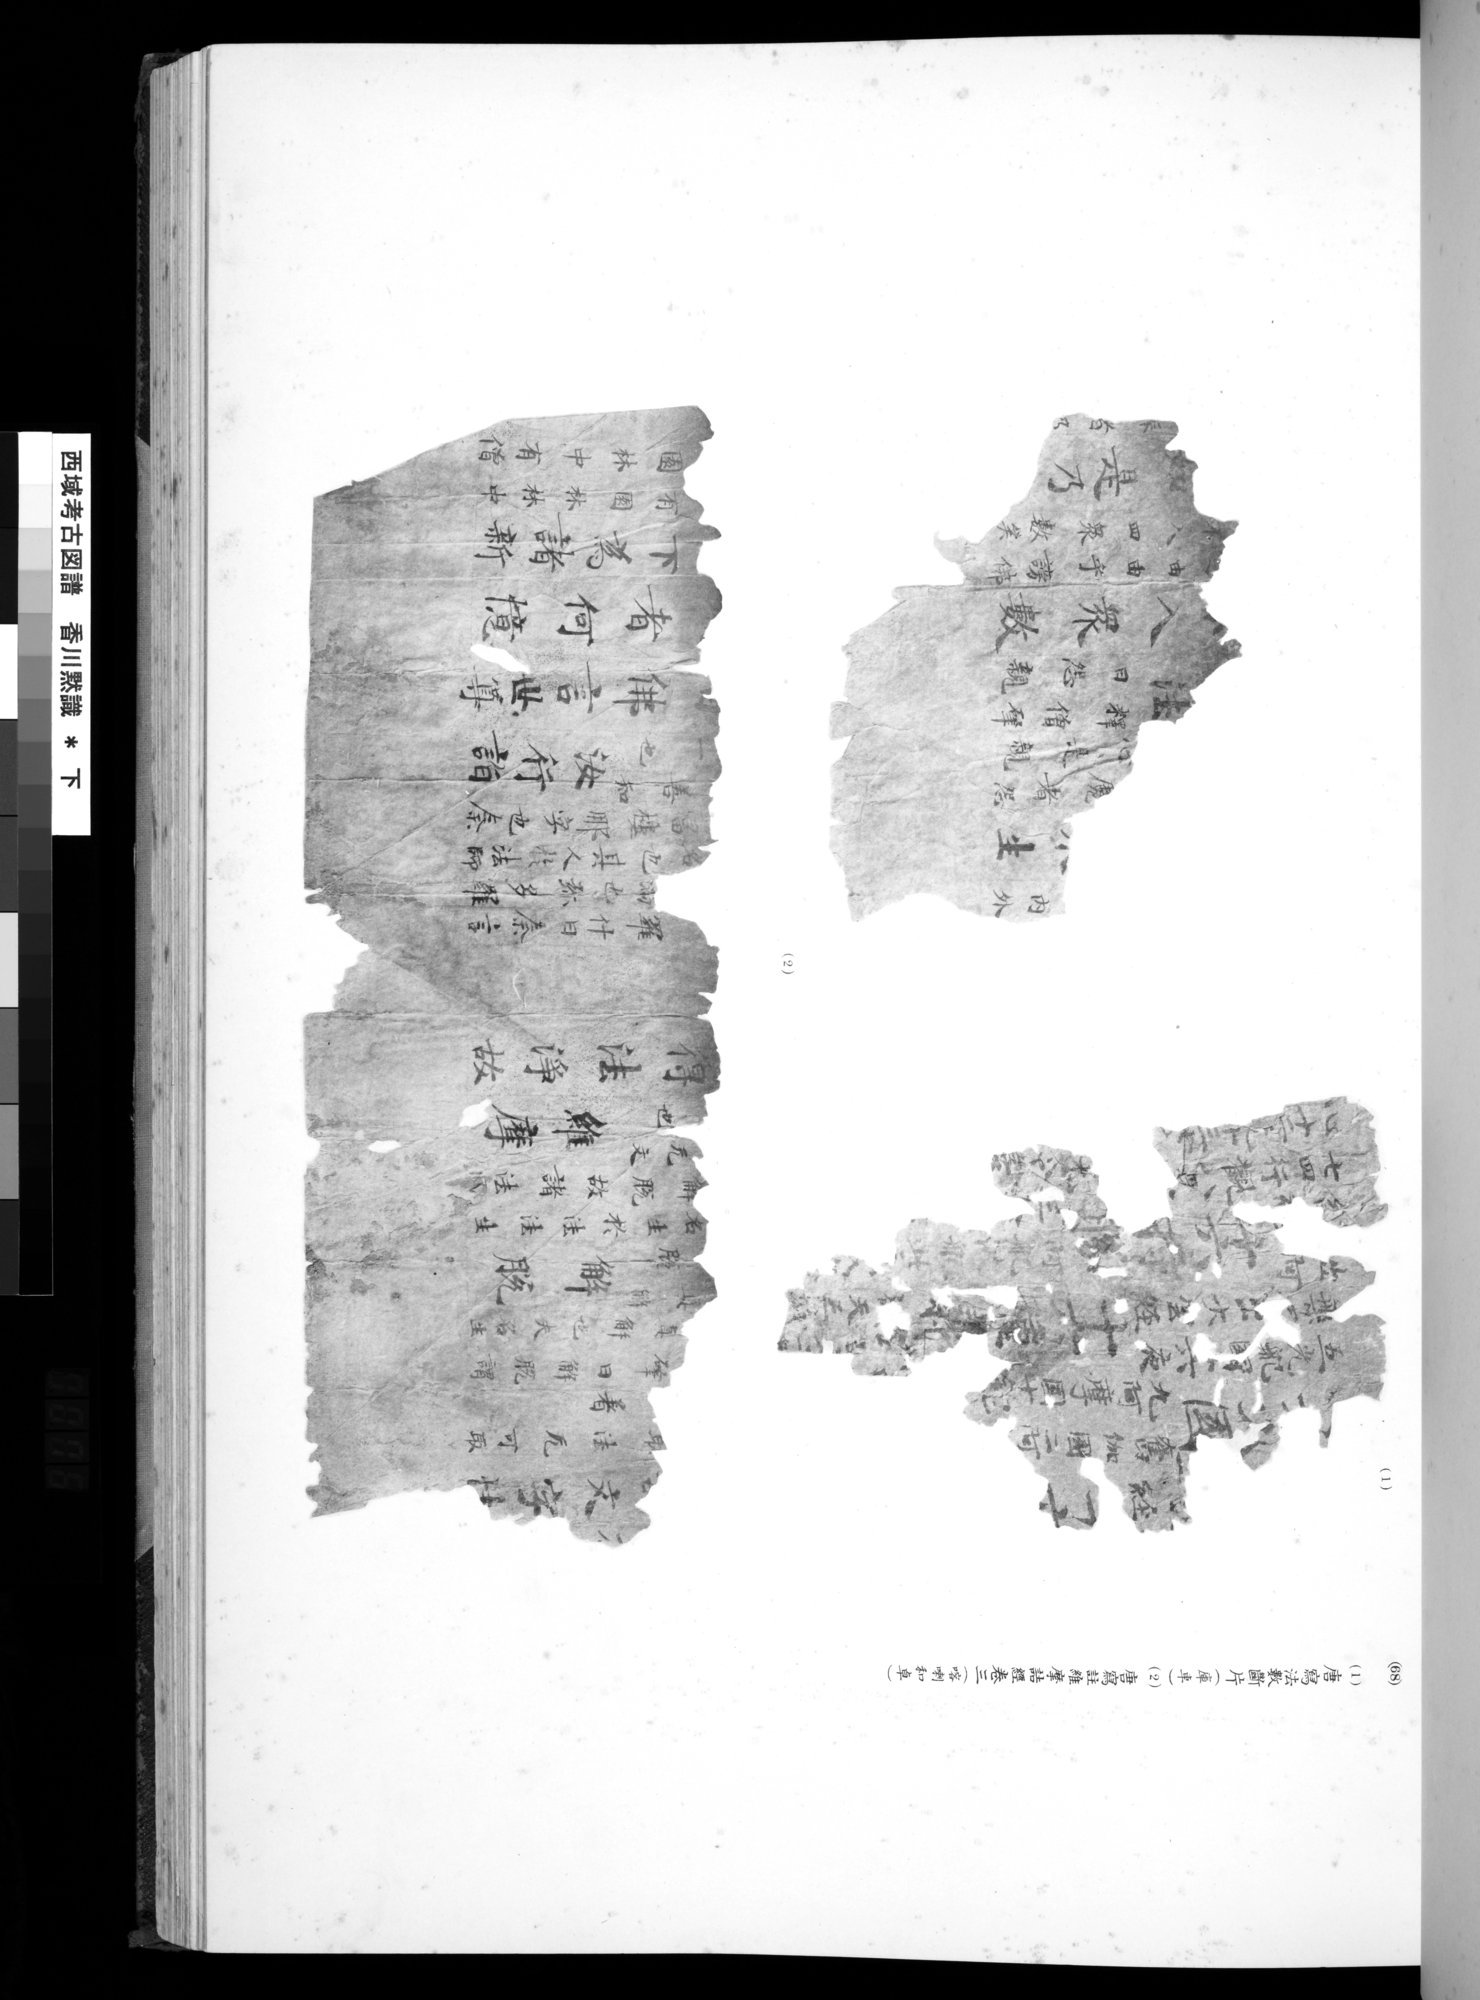 西域考古図譜 : vol.2 / 151 ページ（白黒高解像度画像）